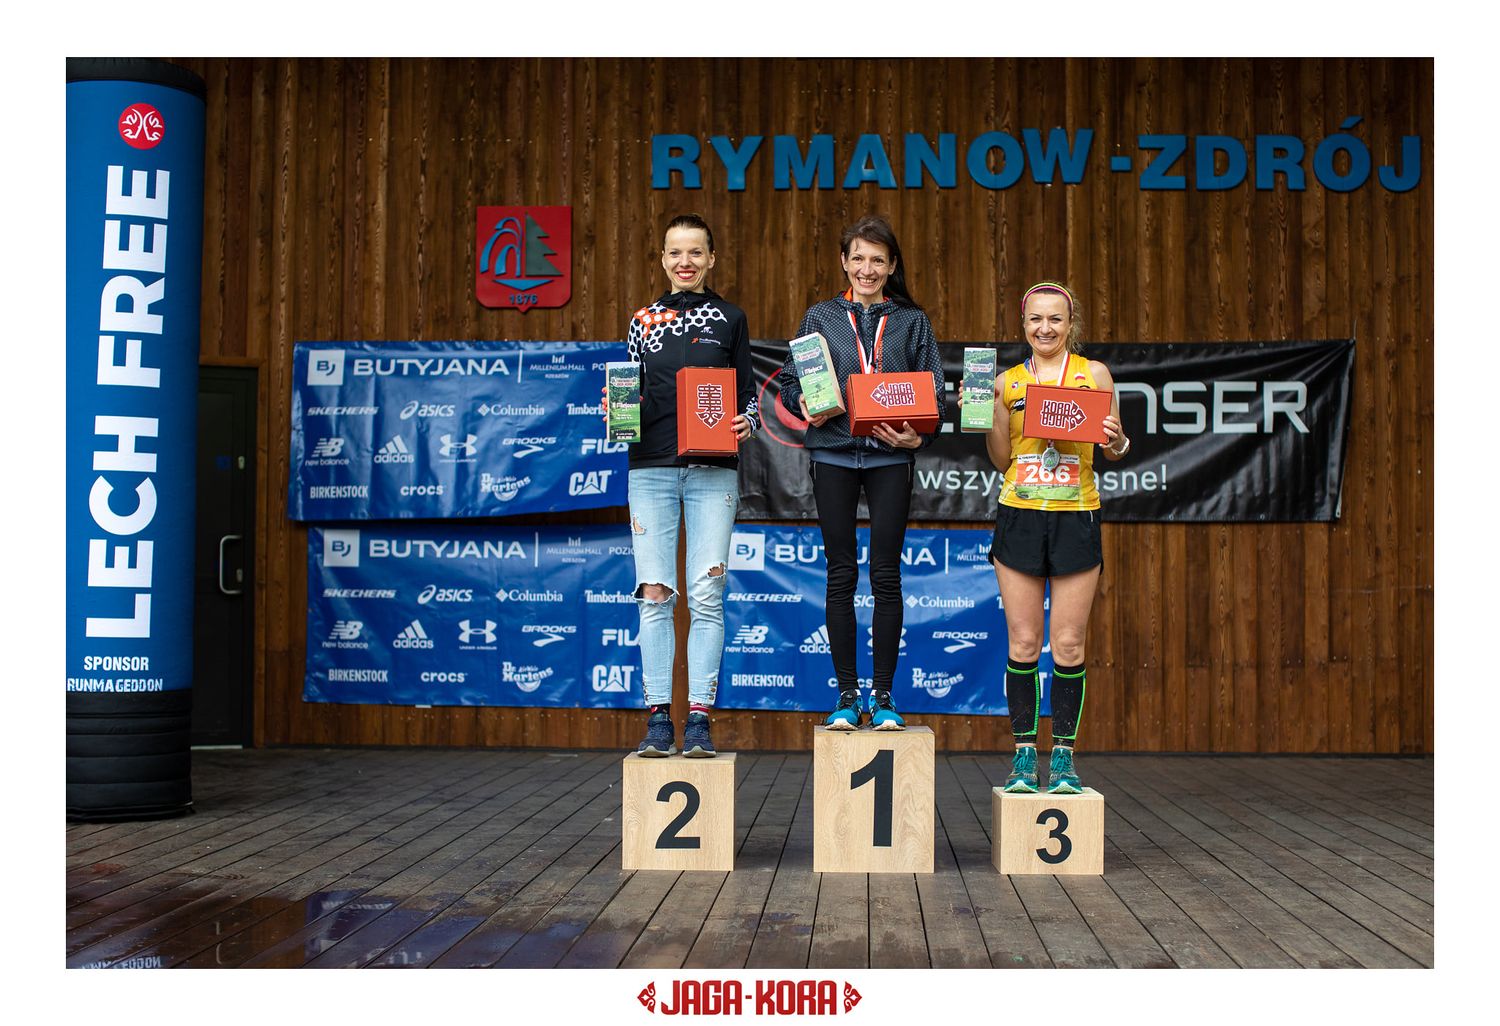 ultramaraton rymanow-zdroj butyjana sponsor